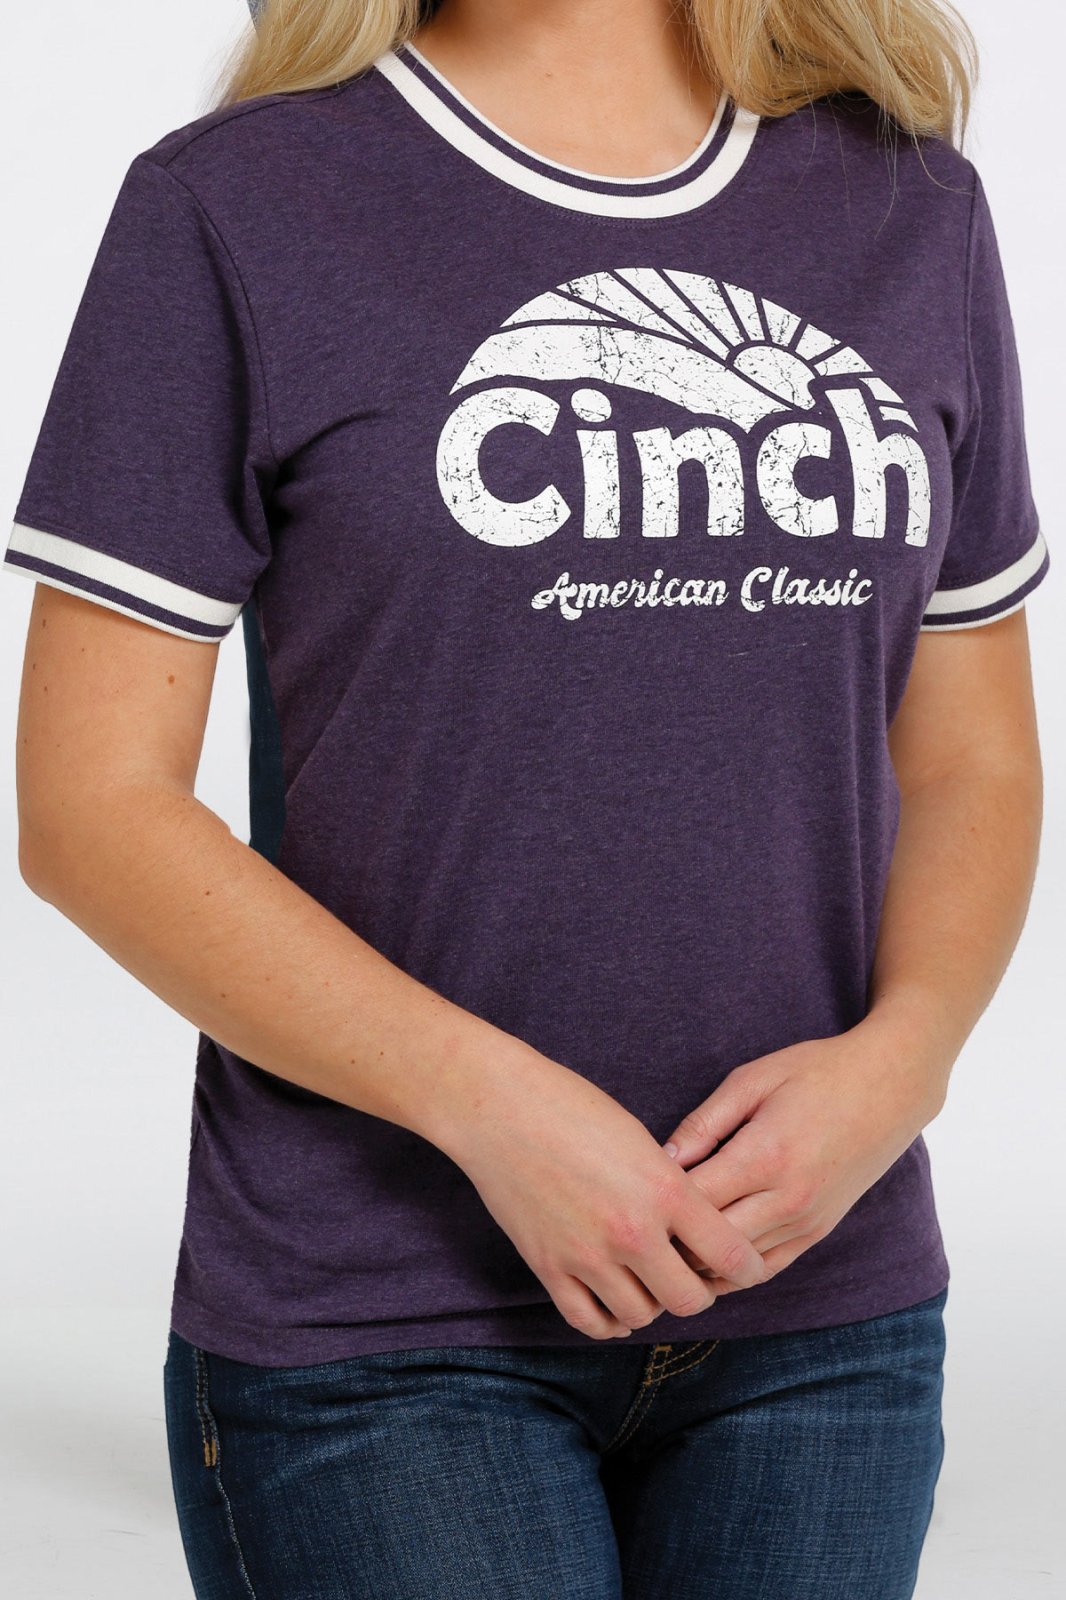 Cinch American Classic Ladie's Tshirt- Purple MSK7890002PUR